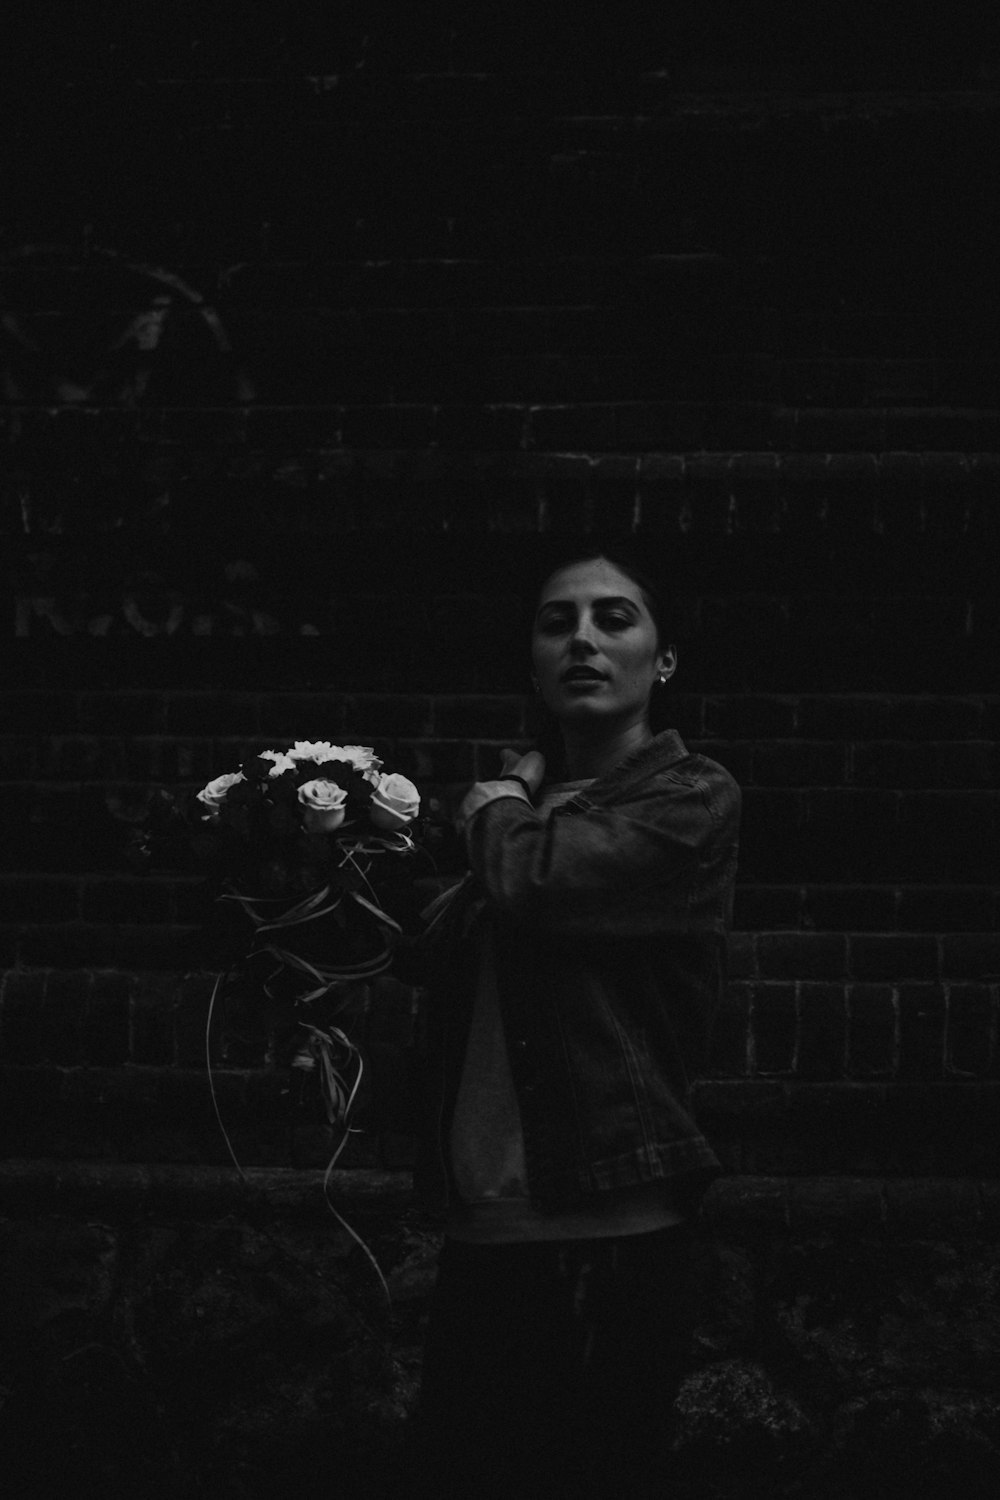 꽃다발을 들고 있는 여자의 그레이스케일 사진